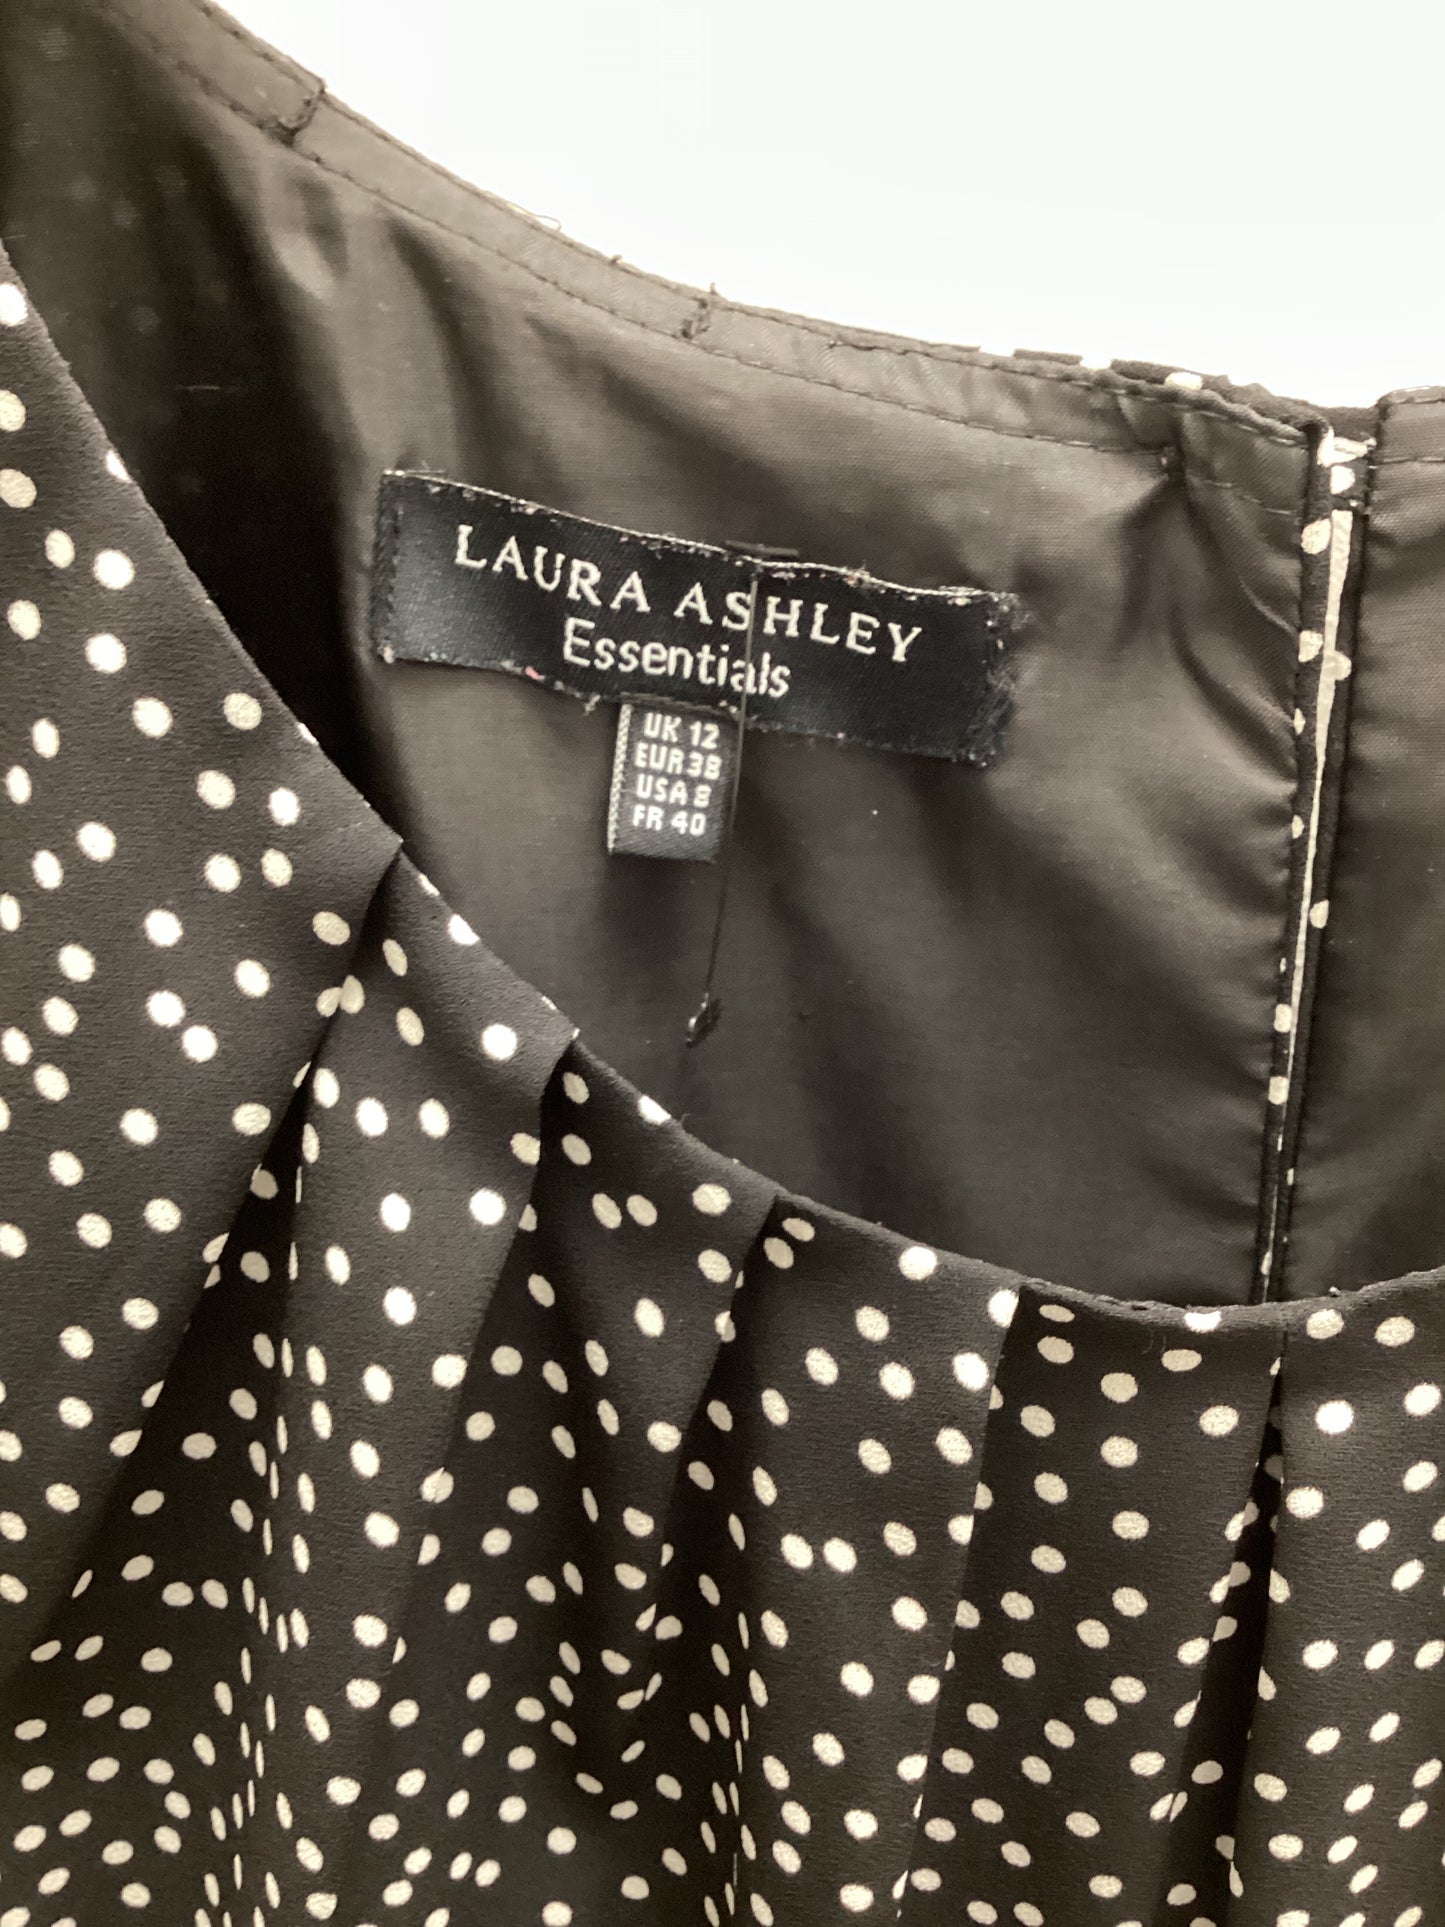 Laura Ashley Black and White Polka Dot Short Sleeve Dress Size UK 12